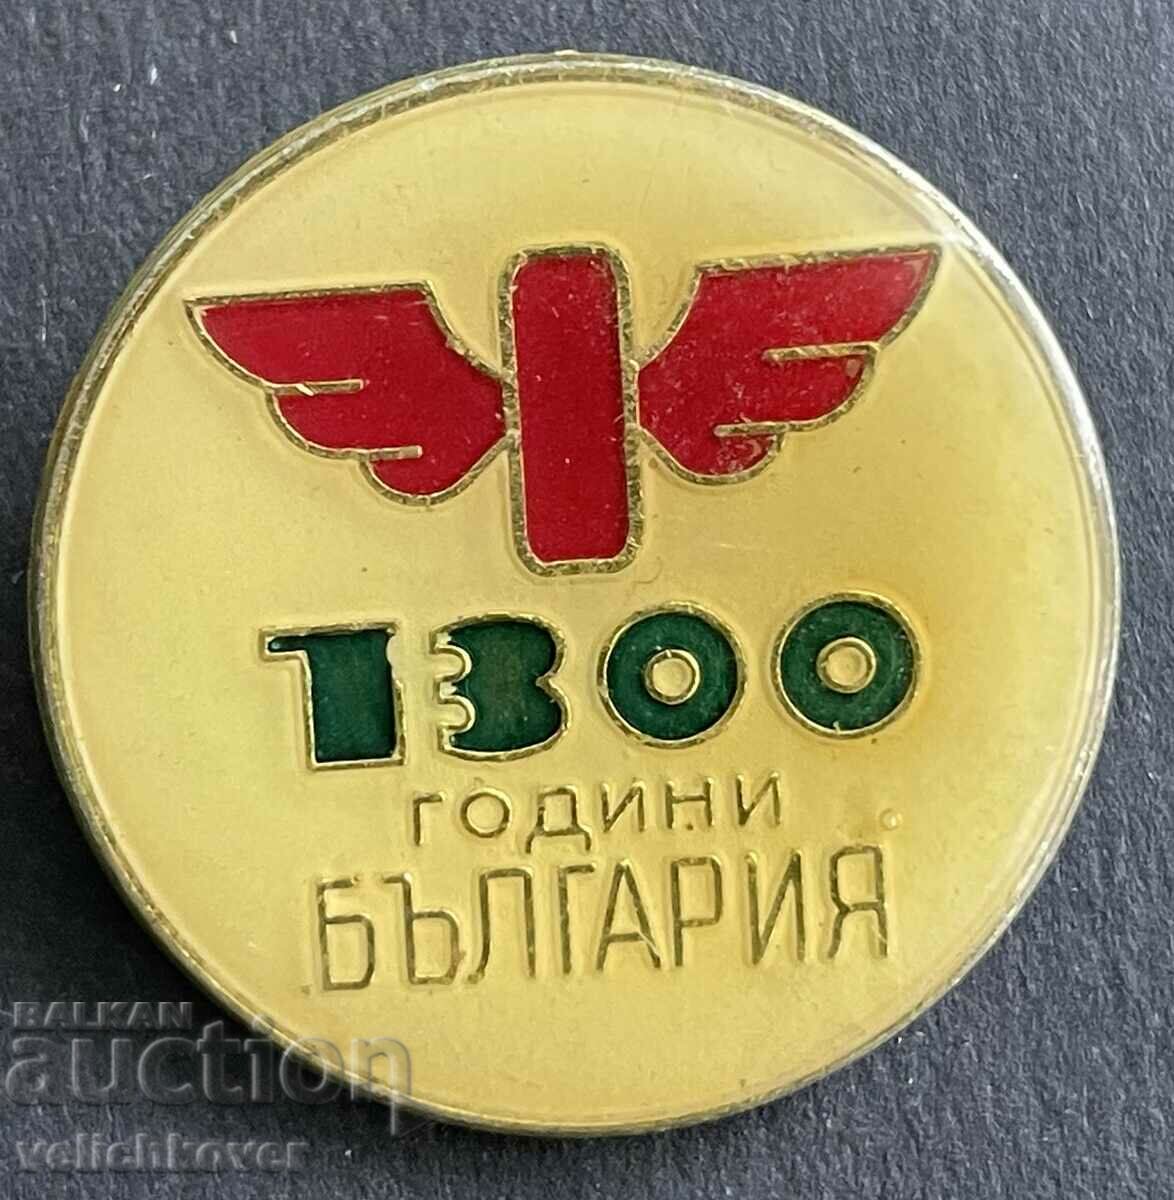 37758 Βουλγαρία υπογραφή BDZ Bulgarian State Railways 1300